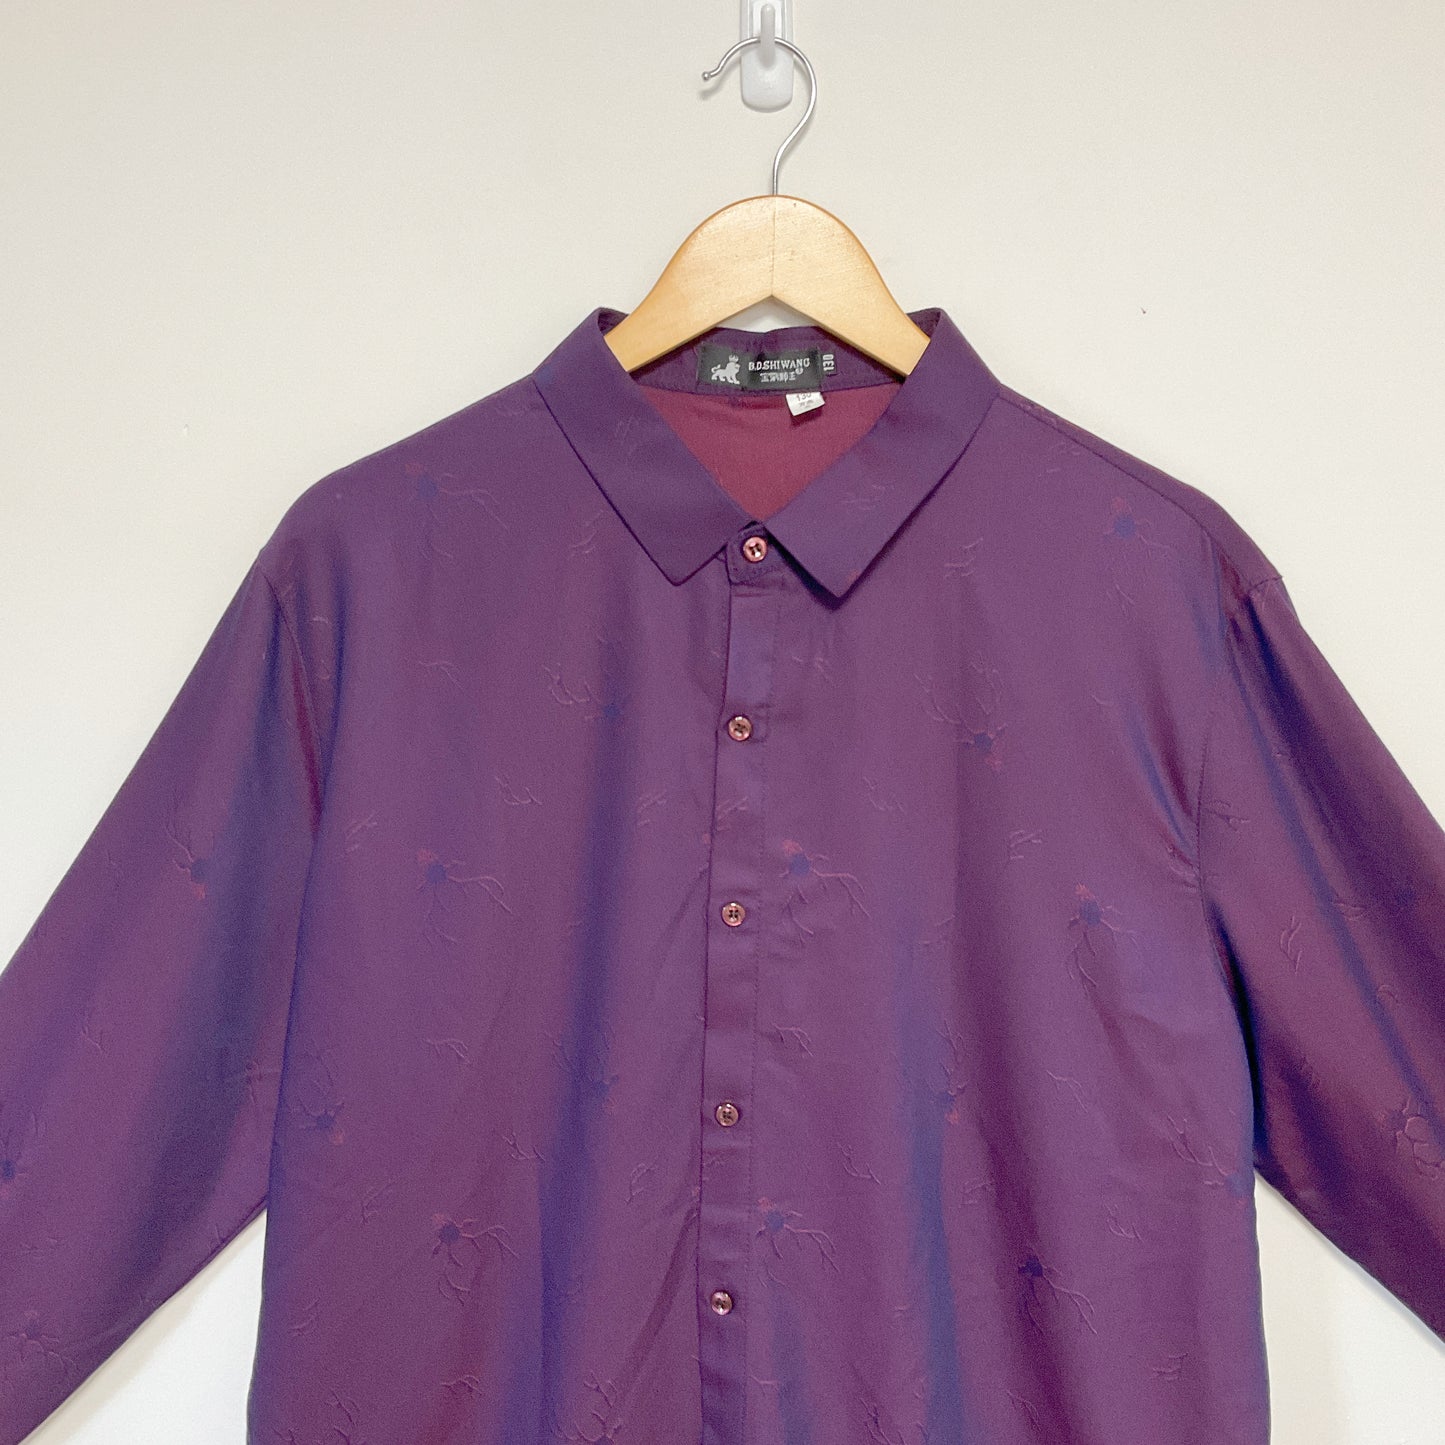 B.D.Shiwang - Long Sleeve Shirt